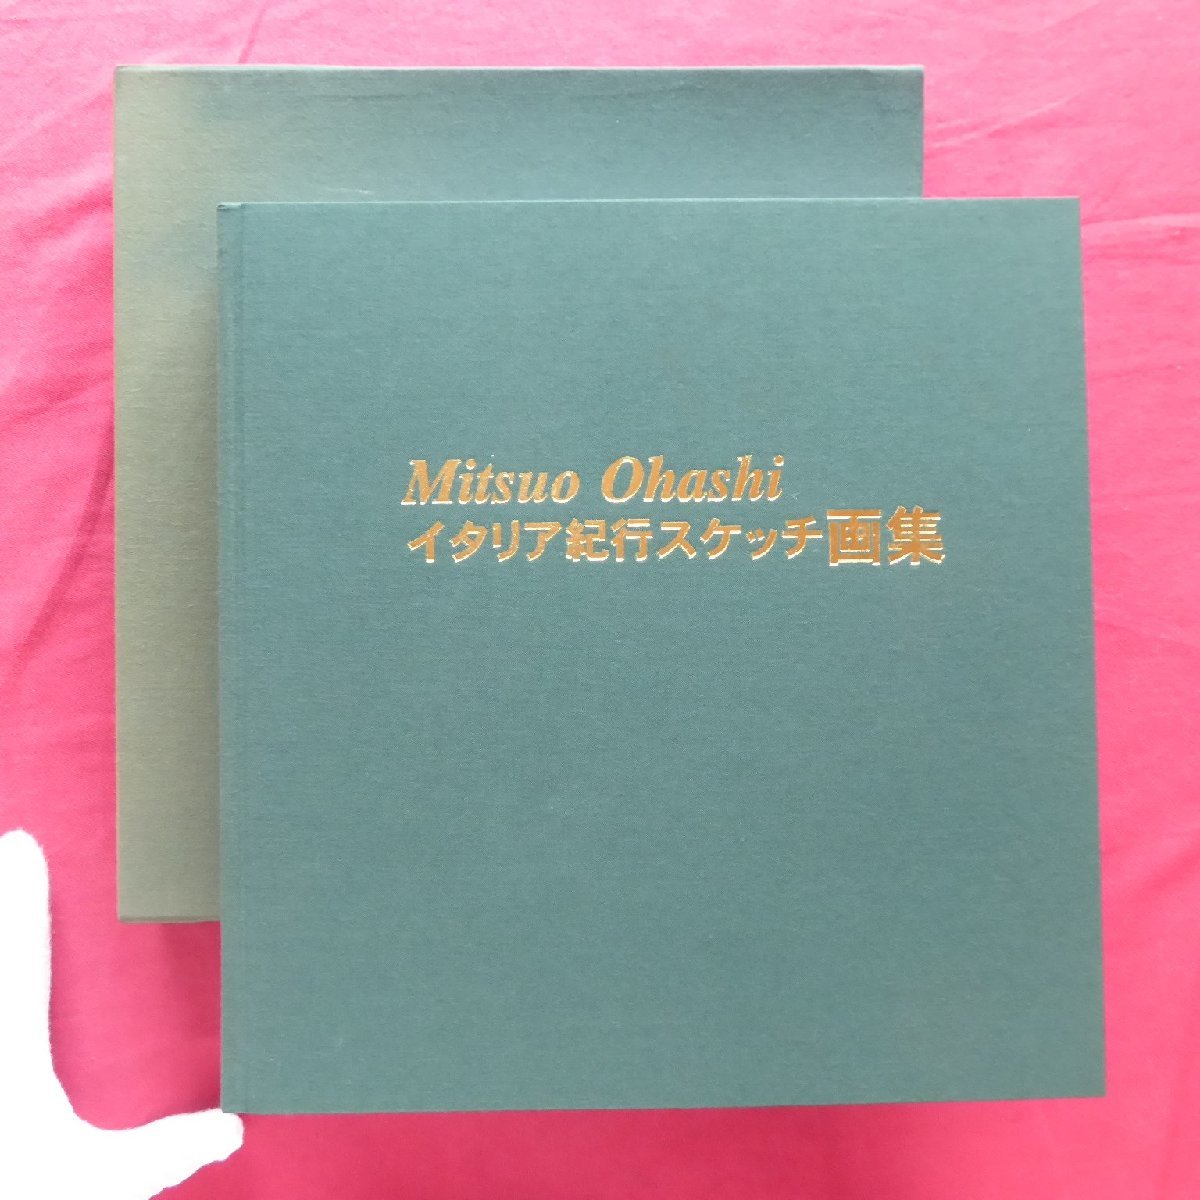 θ9/Mitsuo Ohashi [Italienische Reiseskizzensammlung/2000] Venedig/Scano/Assisi/Landschaft/Häuserreihe, Malerei, Kunstbuch, Sammlung, Kunstbuch